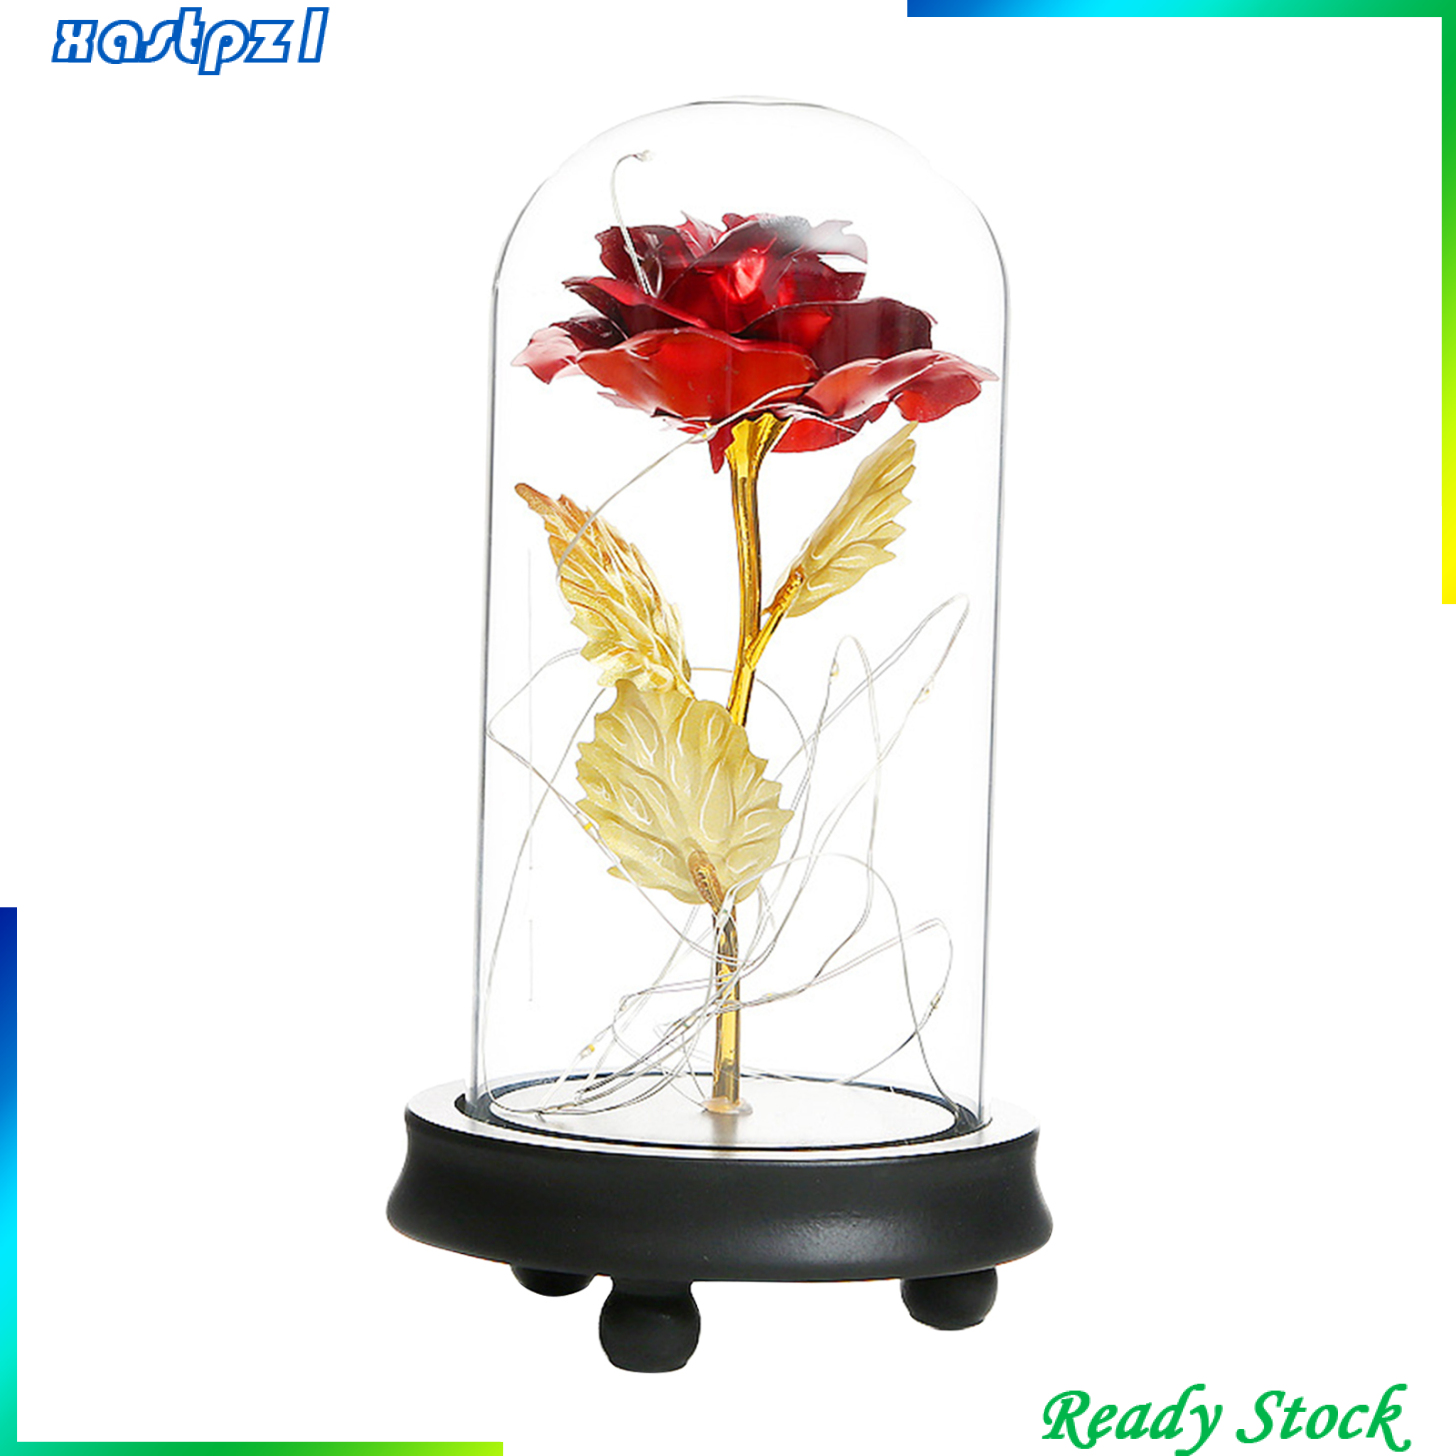 Everlasting Red Rose Flower in Glass Dome Tabletop Flower LED Lamp Light